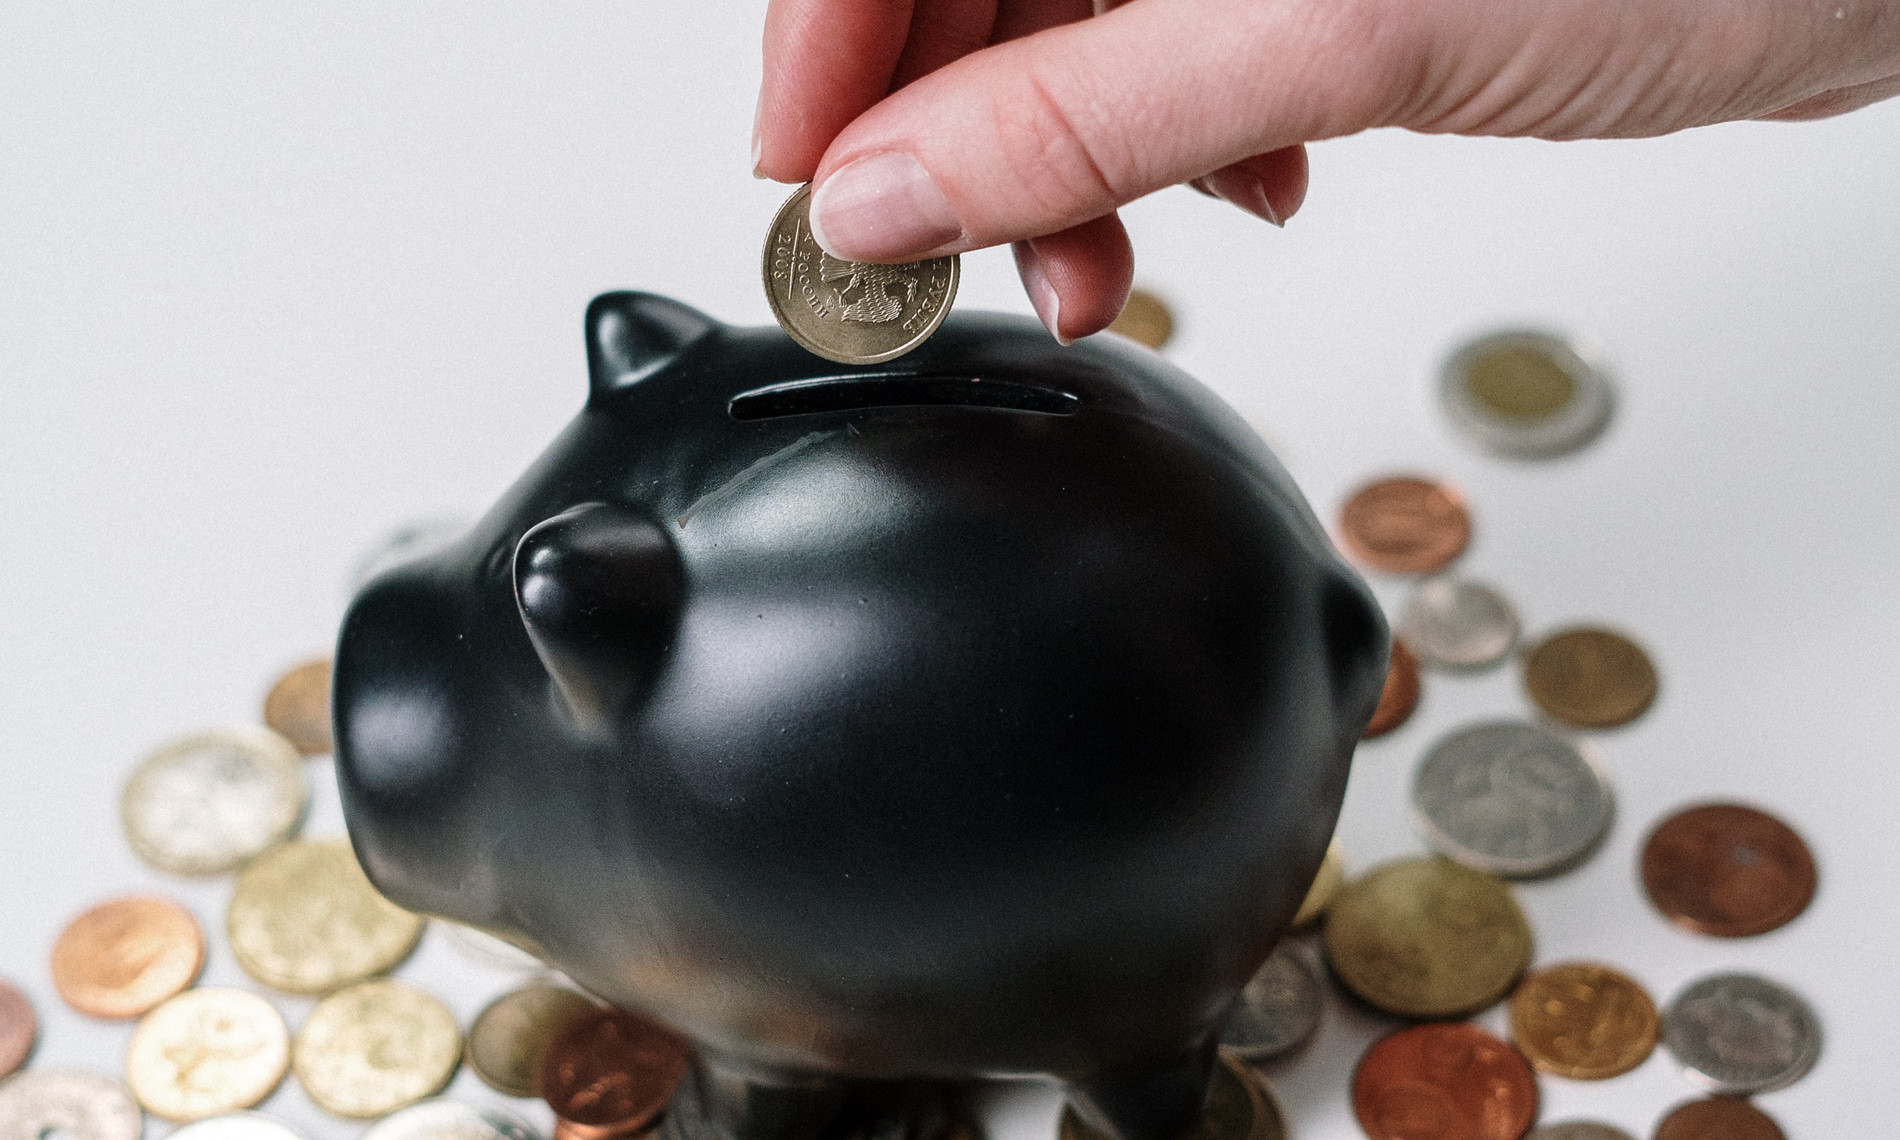 Das Bild zeigt ein Sparschwein, in das Kleingeld geworfen wird. So wird eine Assoziation mit dem Thema Finanzen, Überschuldung und Schuldnerberatung hergestellt.